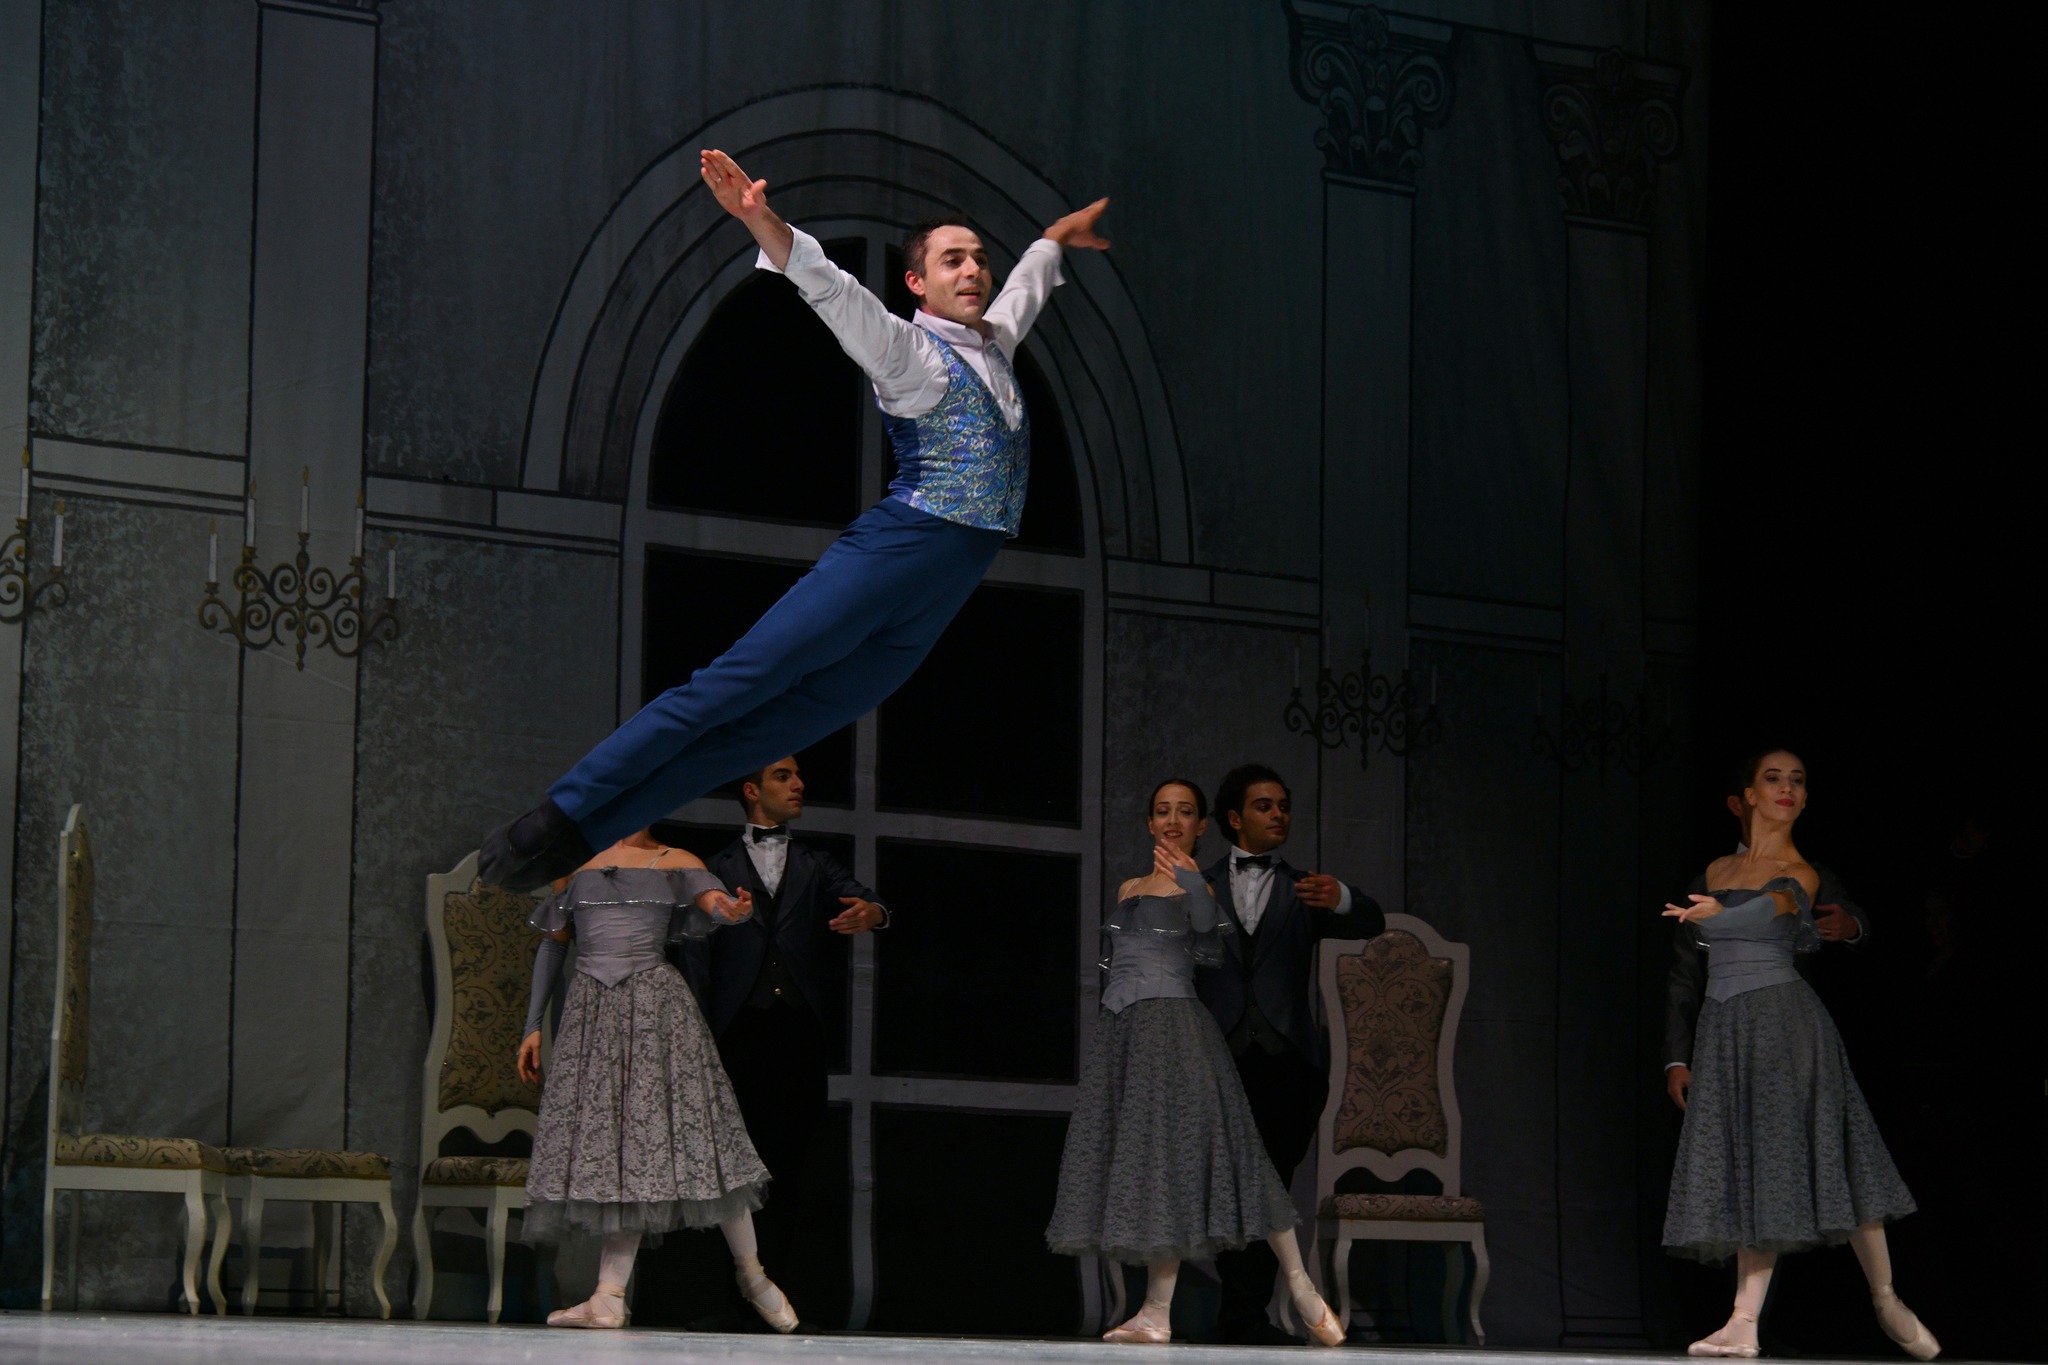 Փարիզի Պալե դե Կոնգրե համերգասրահում առաջին անգամ ֆրանսիացի հանդիսատեսին է ներկայացվել Արամ Խաչատրյանի «Դիմակահանդես» բալետը